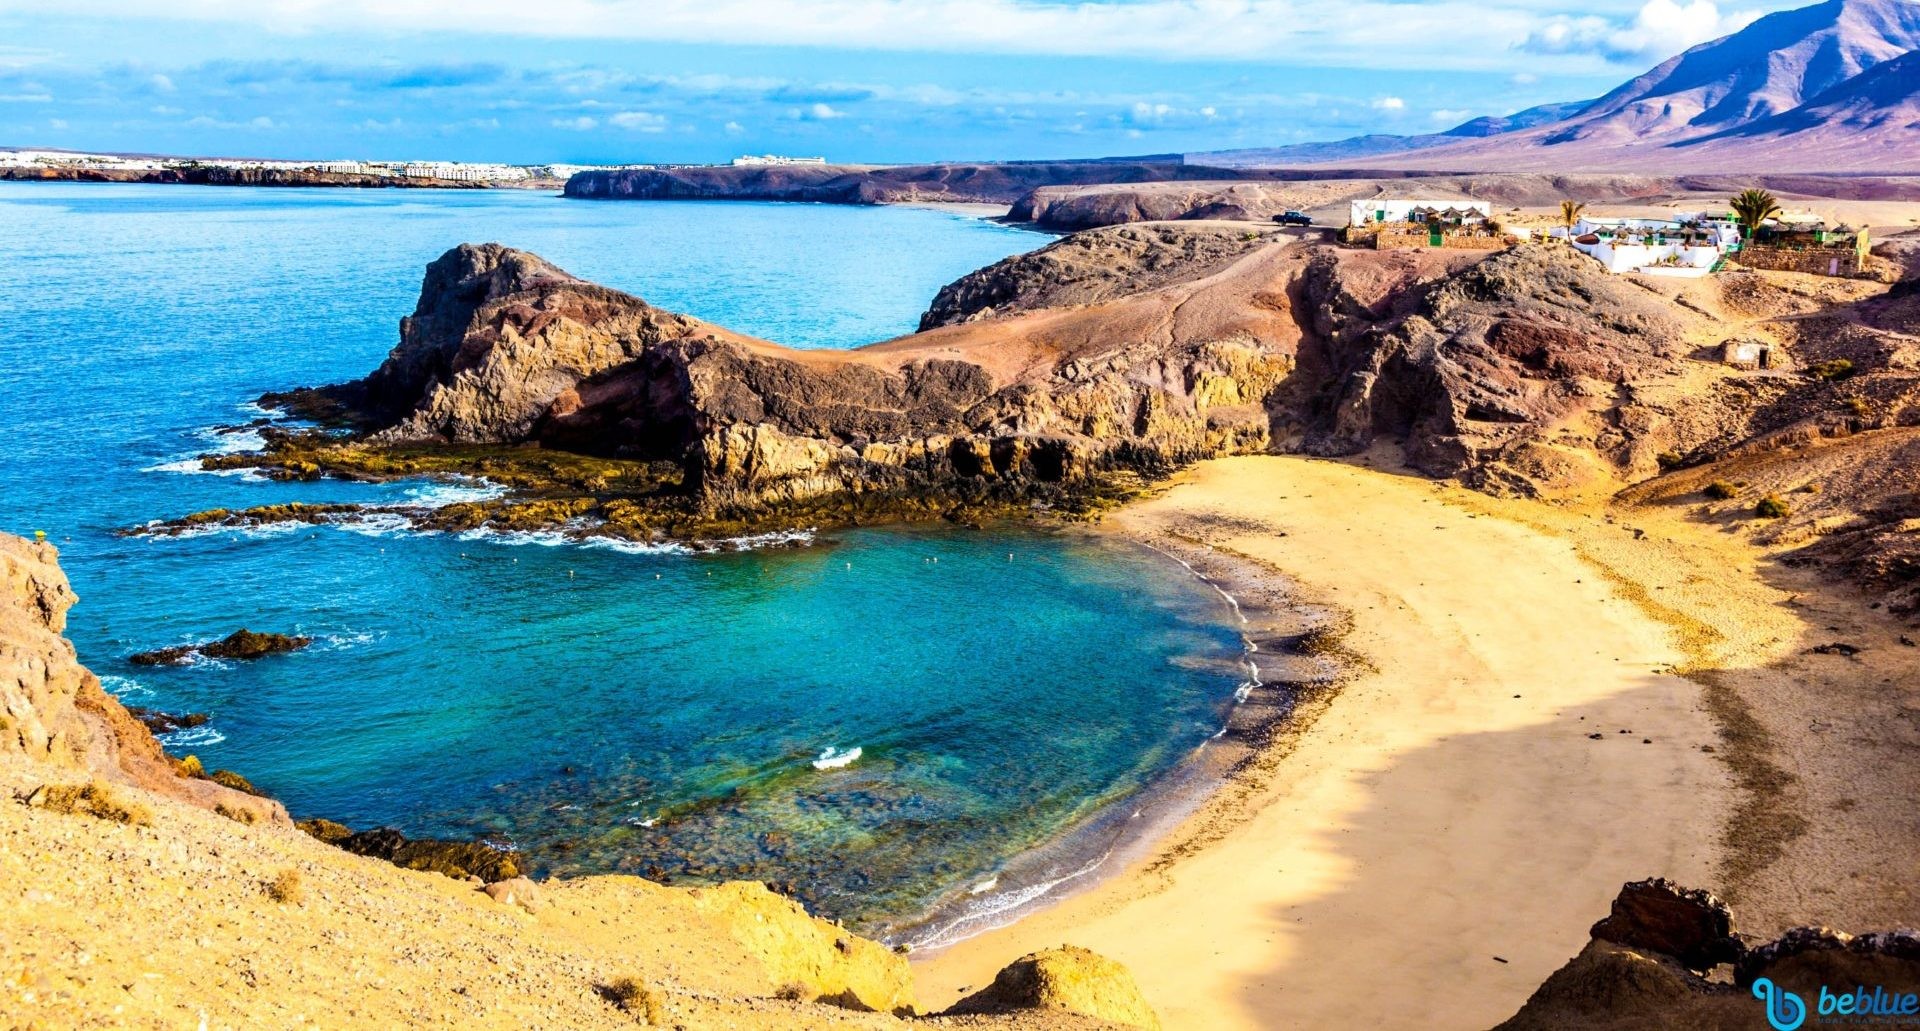 Canary Islands: Sailing to Fuerteventura